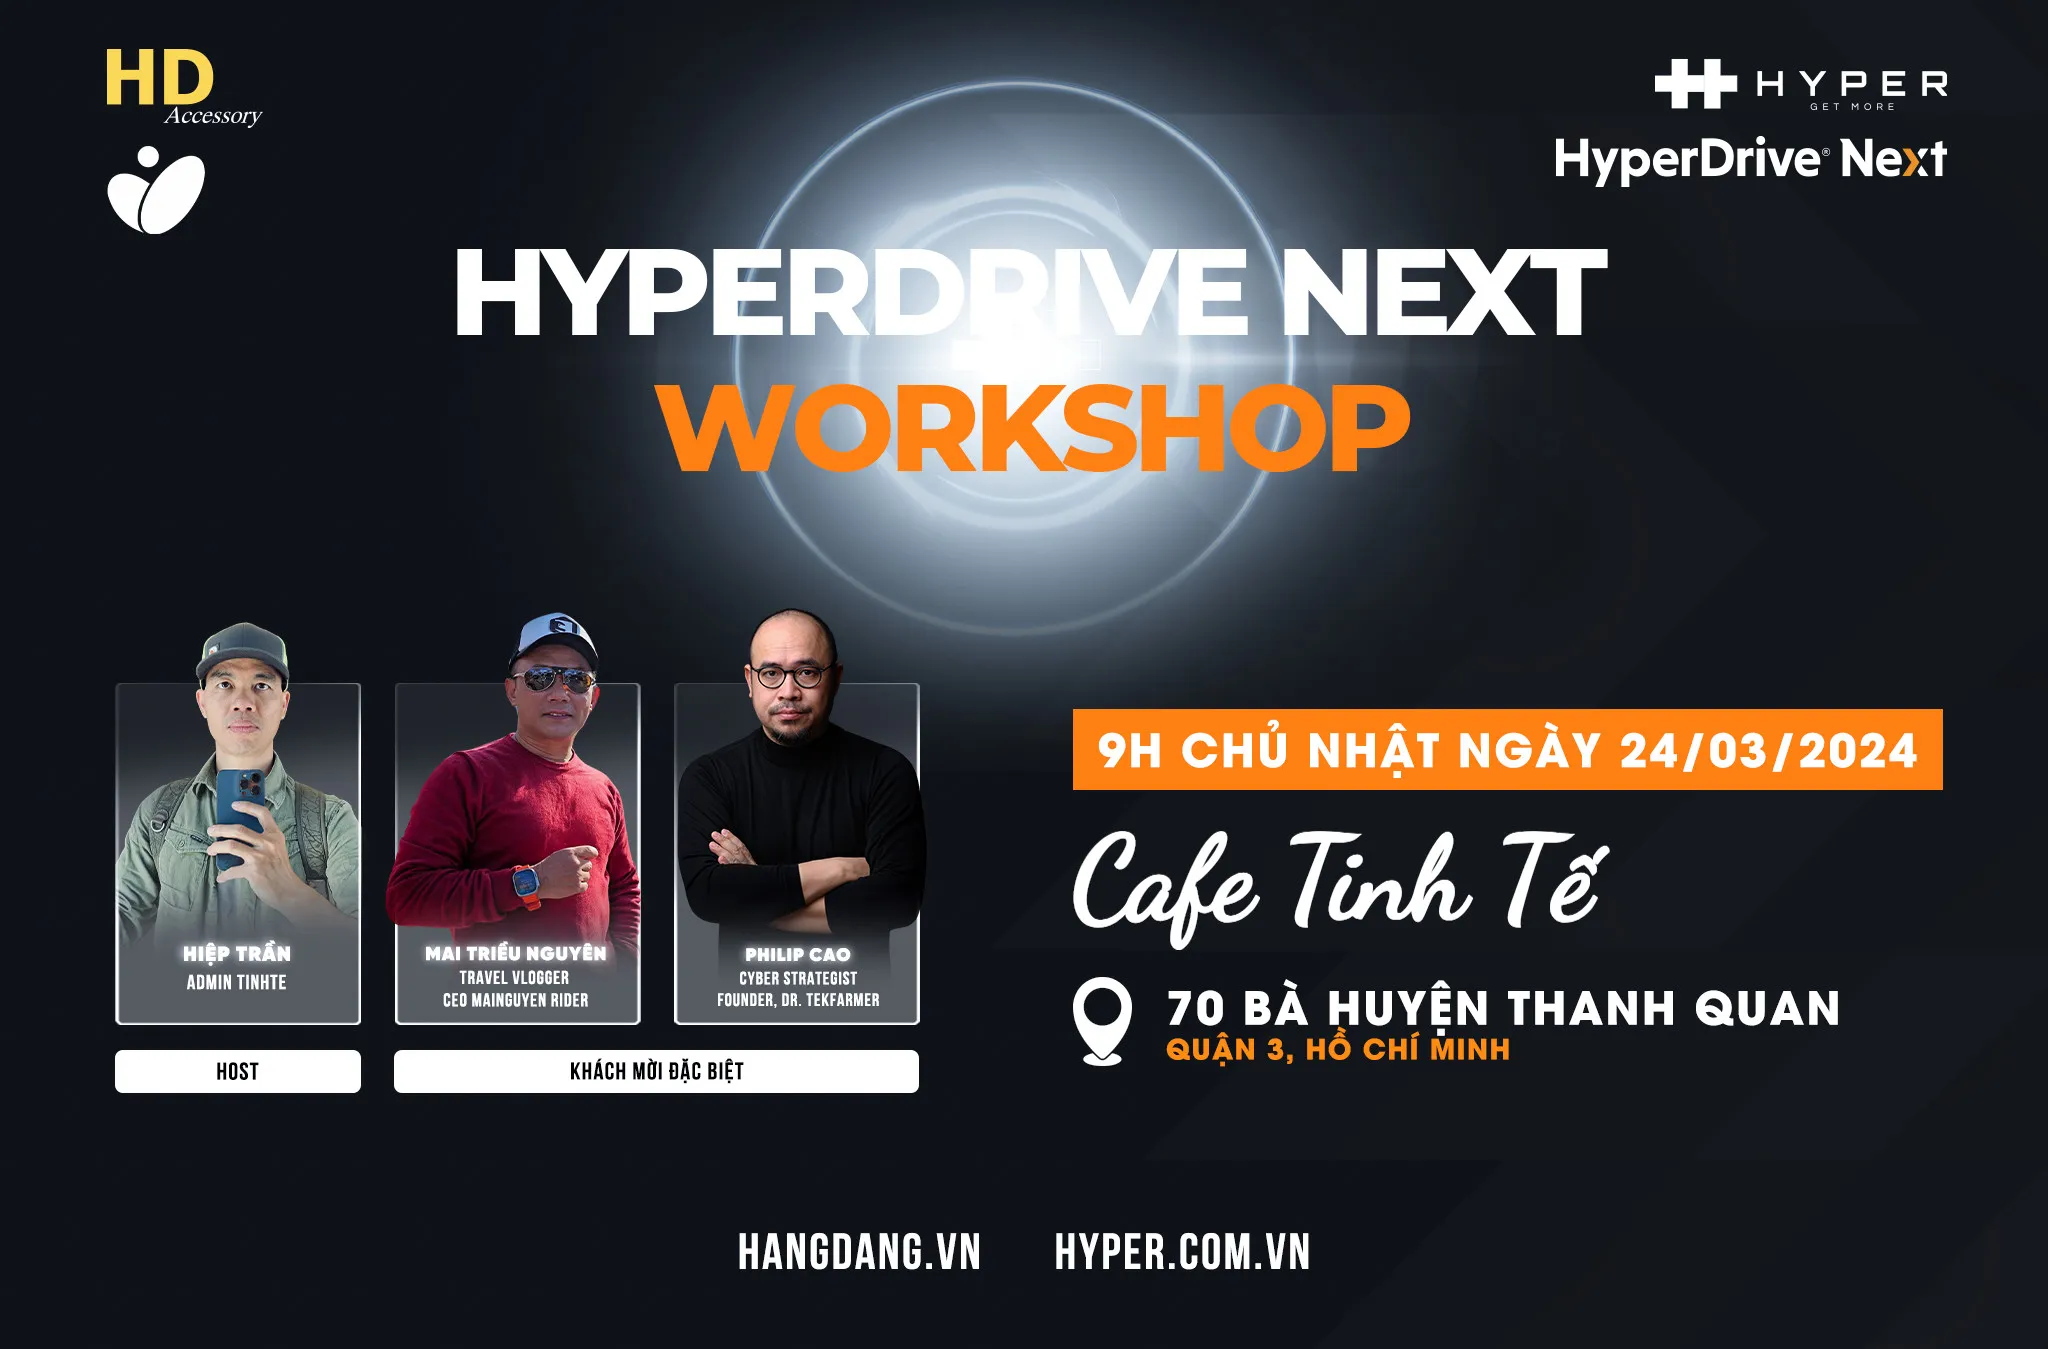 Hằng Đặng Accessory và Hyper tổ chức workshop giới thiệu HyperDrive Next